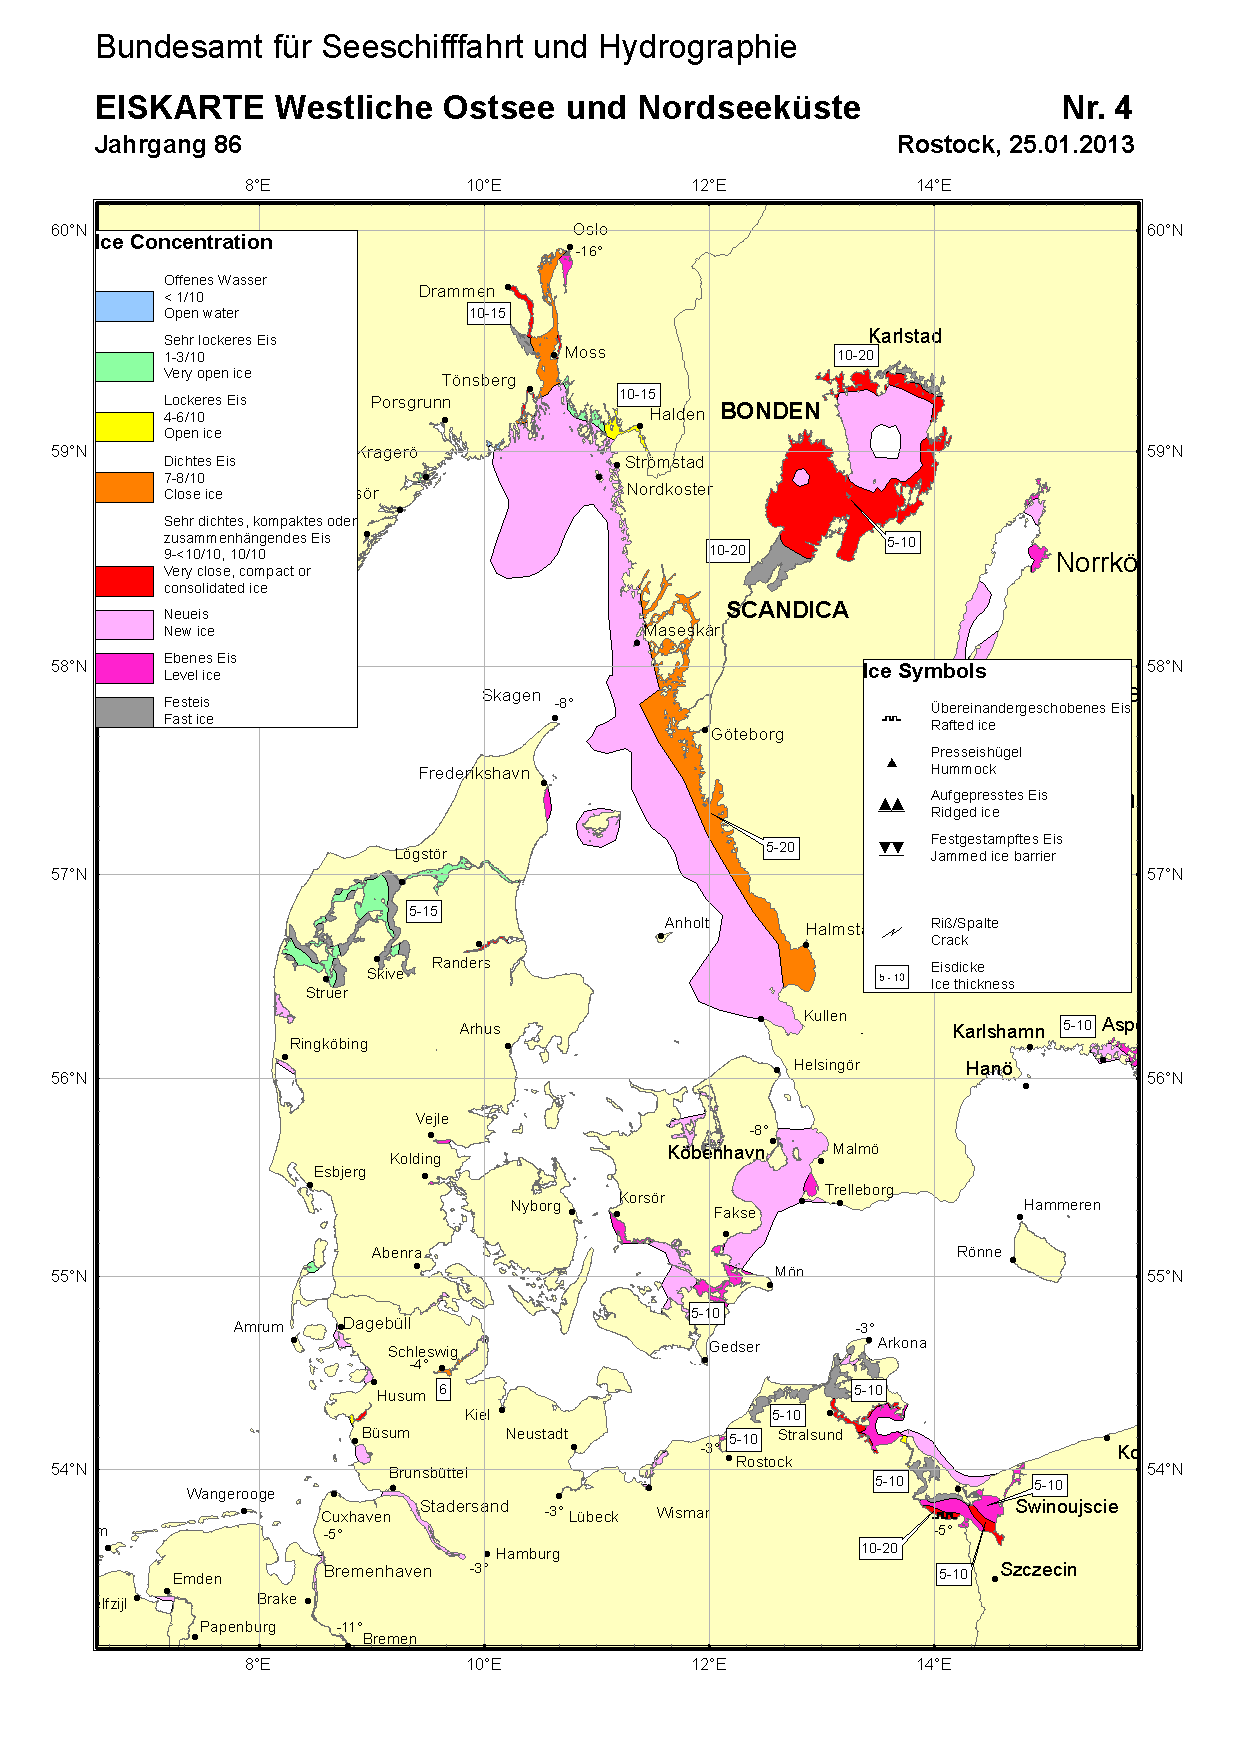 Eisverhältnisse in der Deutschen Bucht, im Kattegat, Skagerrak sowie in den dänischen und schwedischen Gewässern der westlichen Ostsee An der niederländischen Nordseeküste trat im Wattenmeer südlich